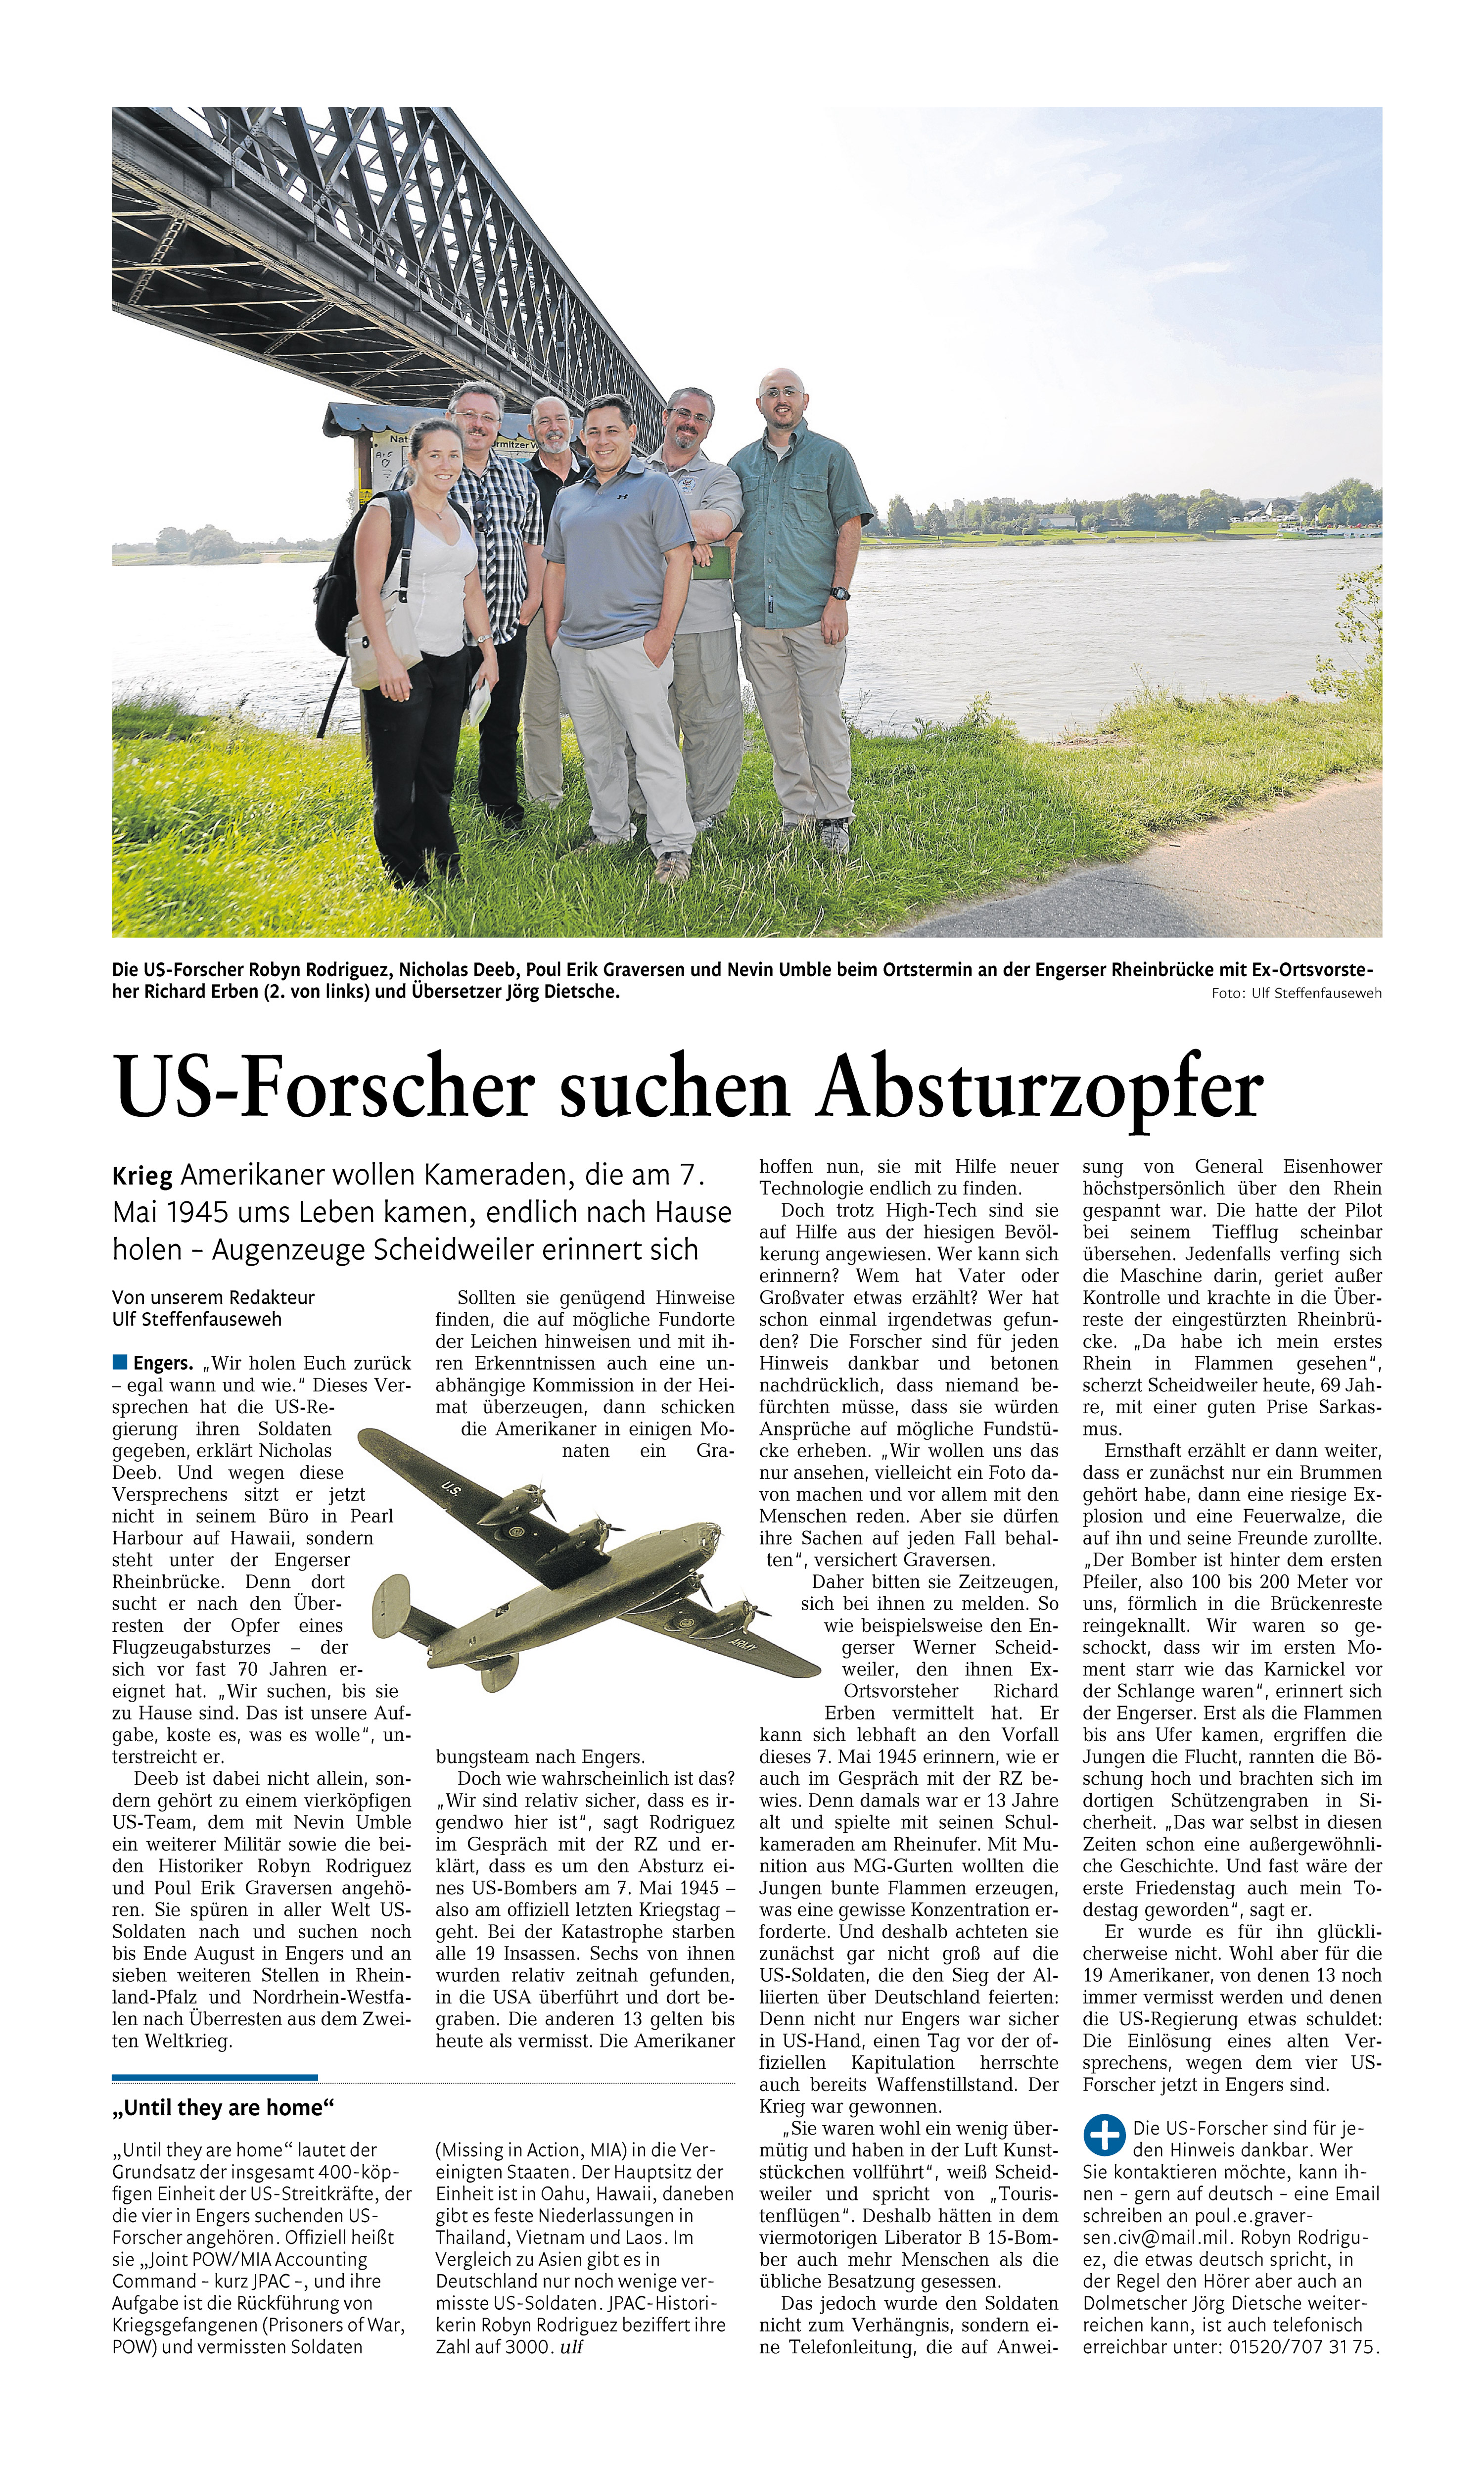 US-Forscher suchen Absturzopfer - Mit freundlicher Genehmigung der Rhein-Zeitung (Mittelrhein-Verlag)